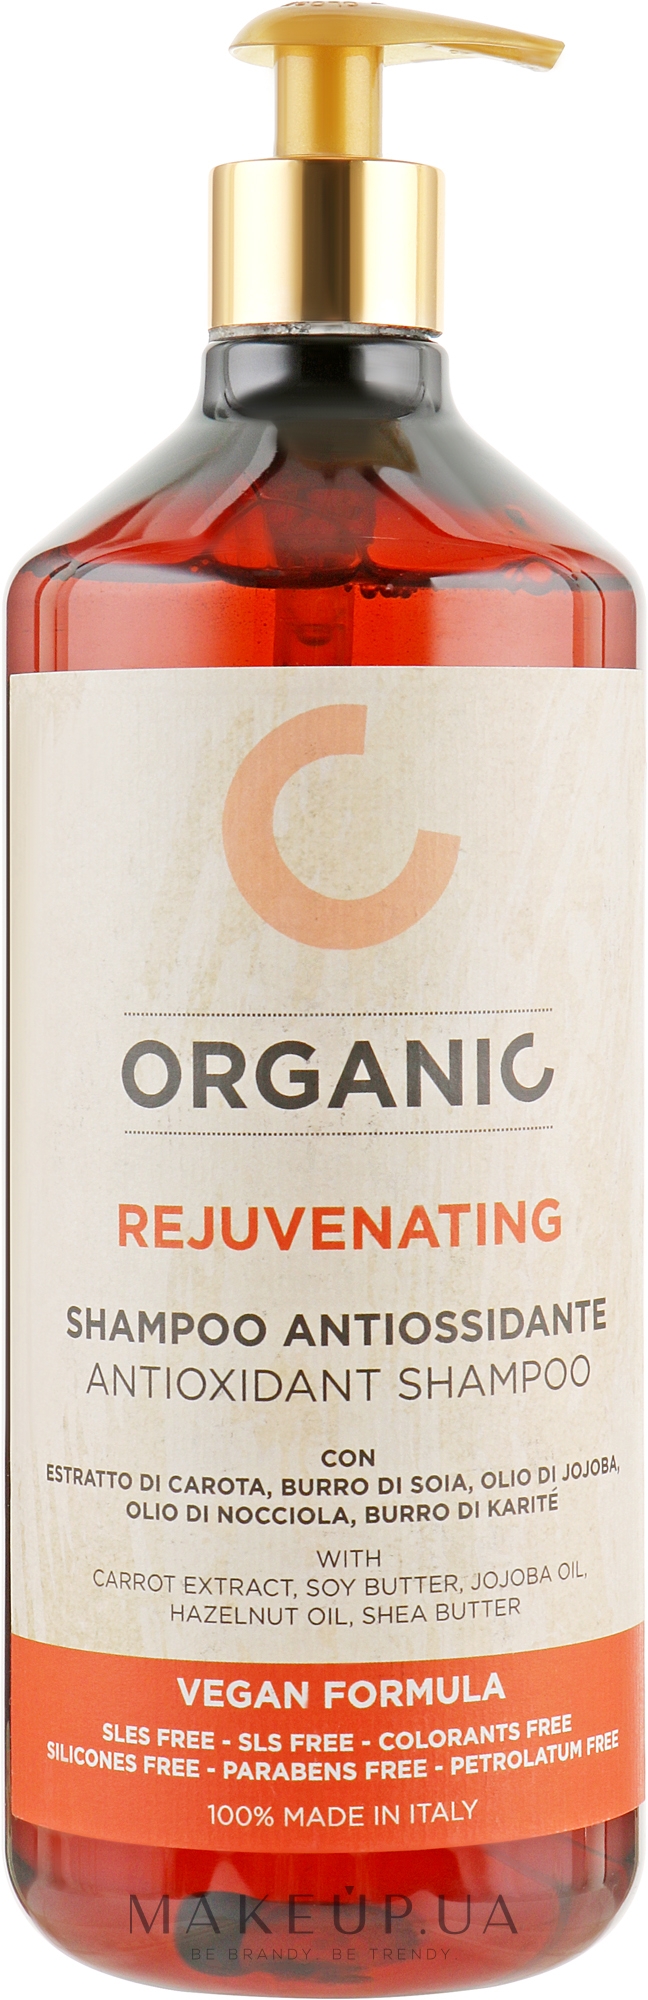 Органический шампунь тонизирующий для всех типов волос - Punti Dii Vista Organic Rejuvenating Antioxidant Shampoo — фото 1000ml